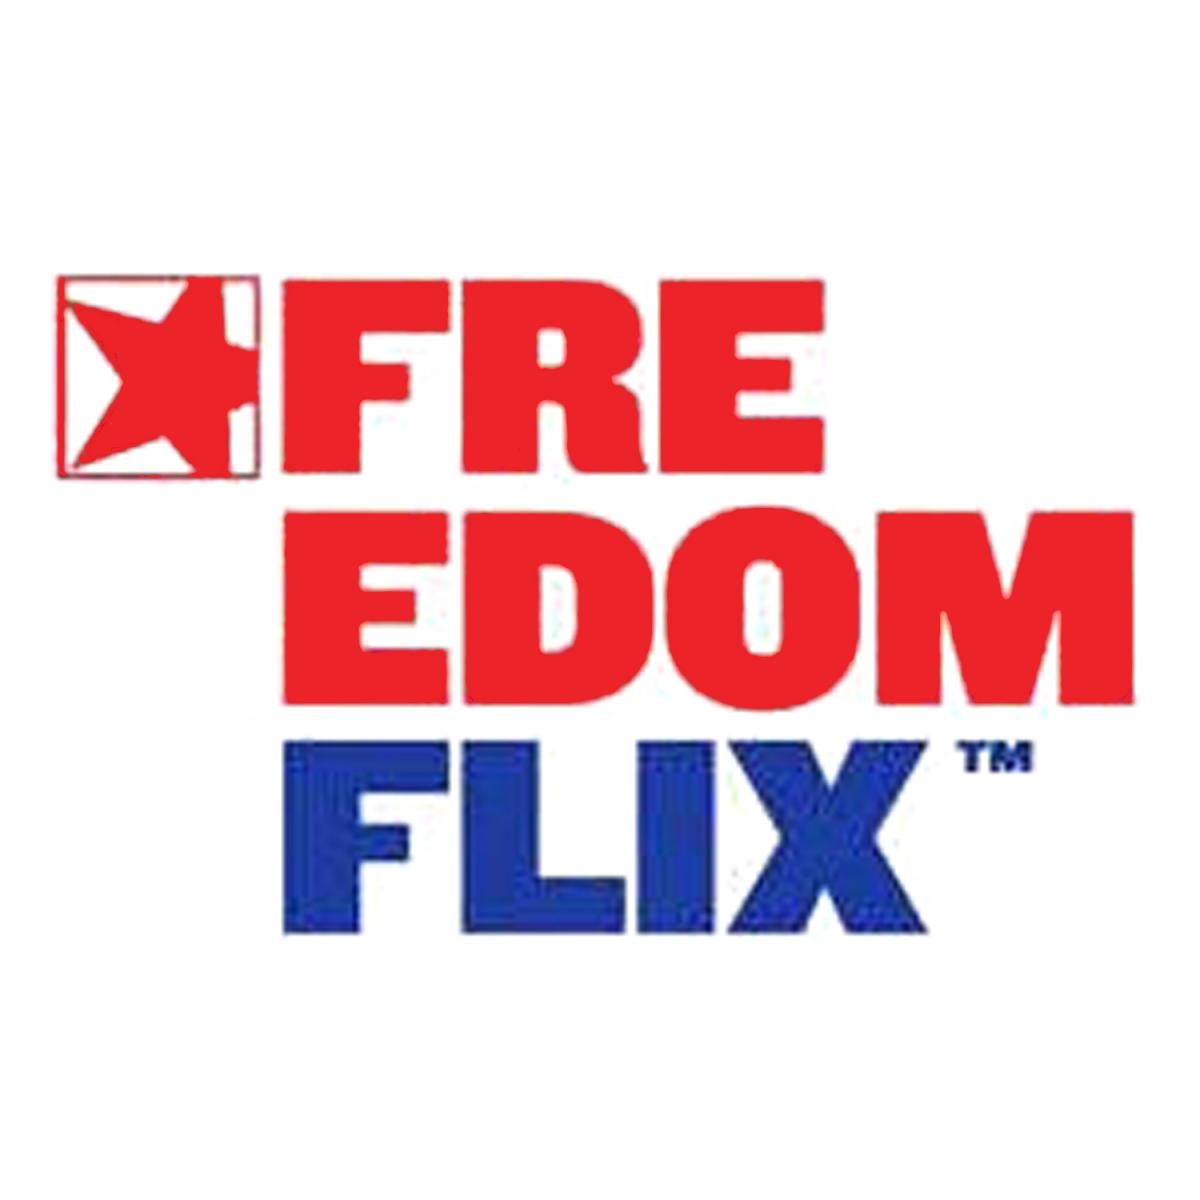 FreedomFlix